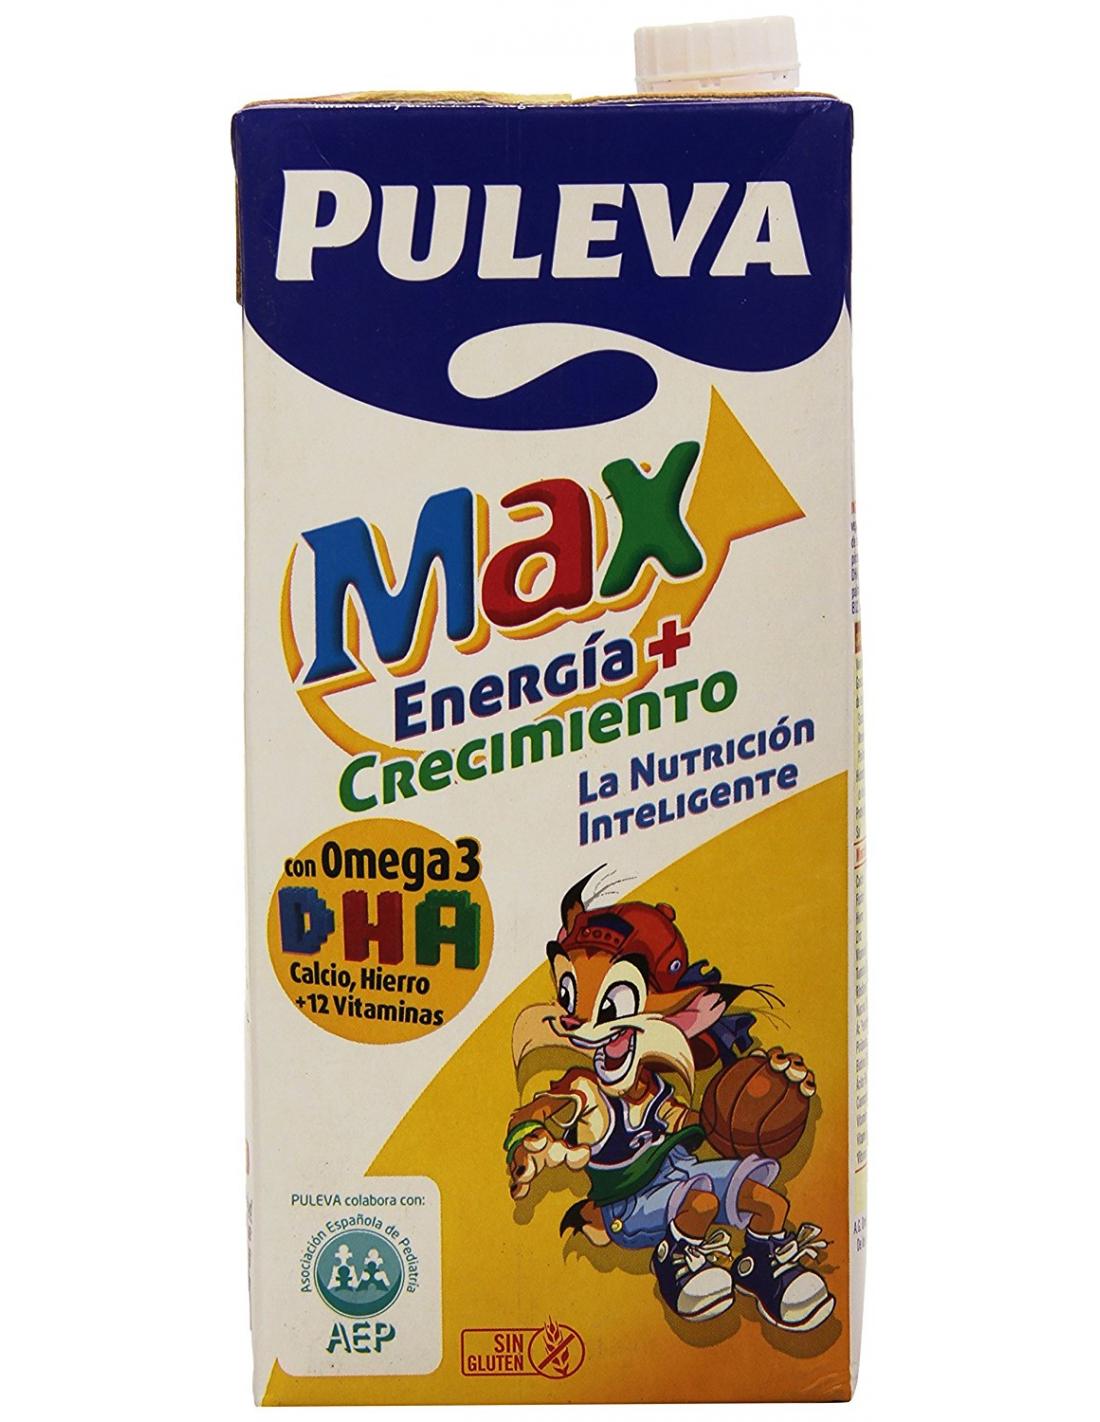 Puleva Max Leche Crecimiento y Desarrollo con Cereales - 1 L : :  Alimentación y bebidas